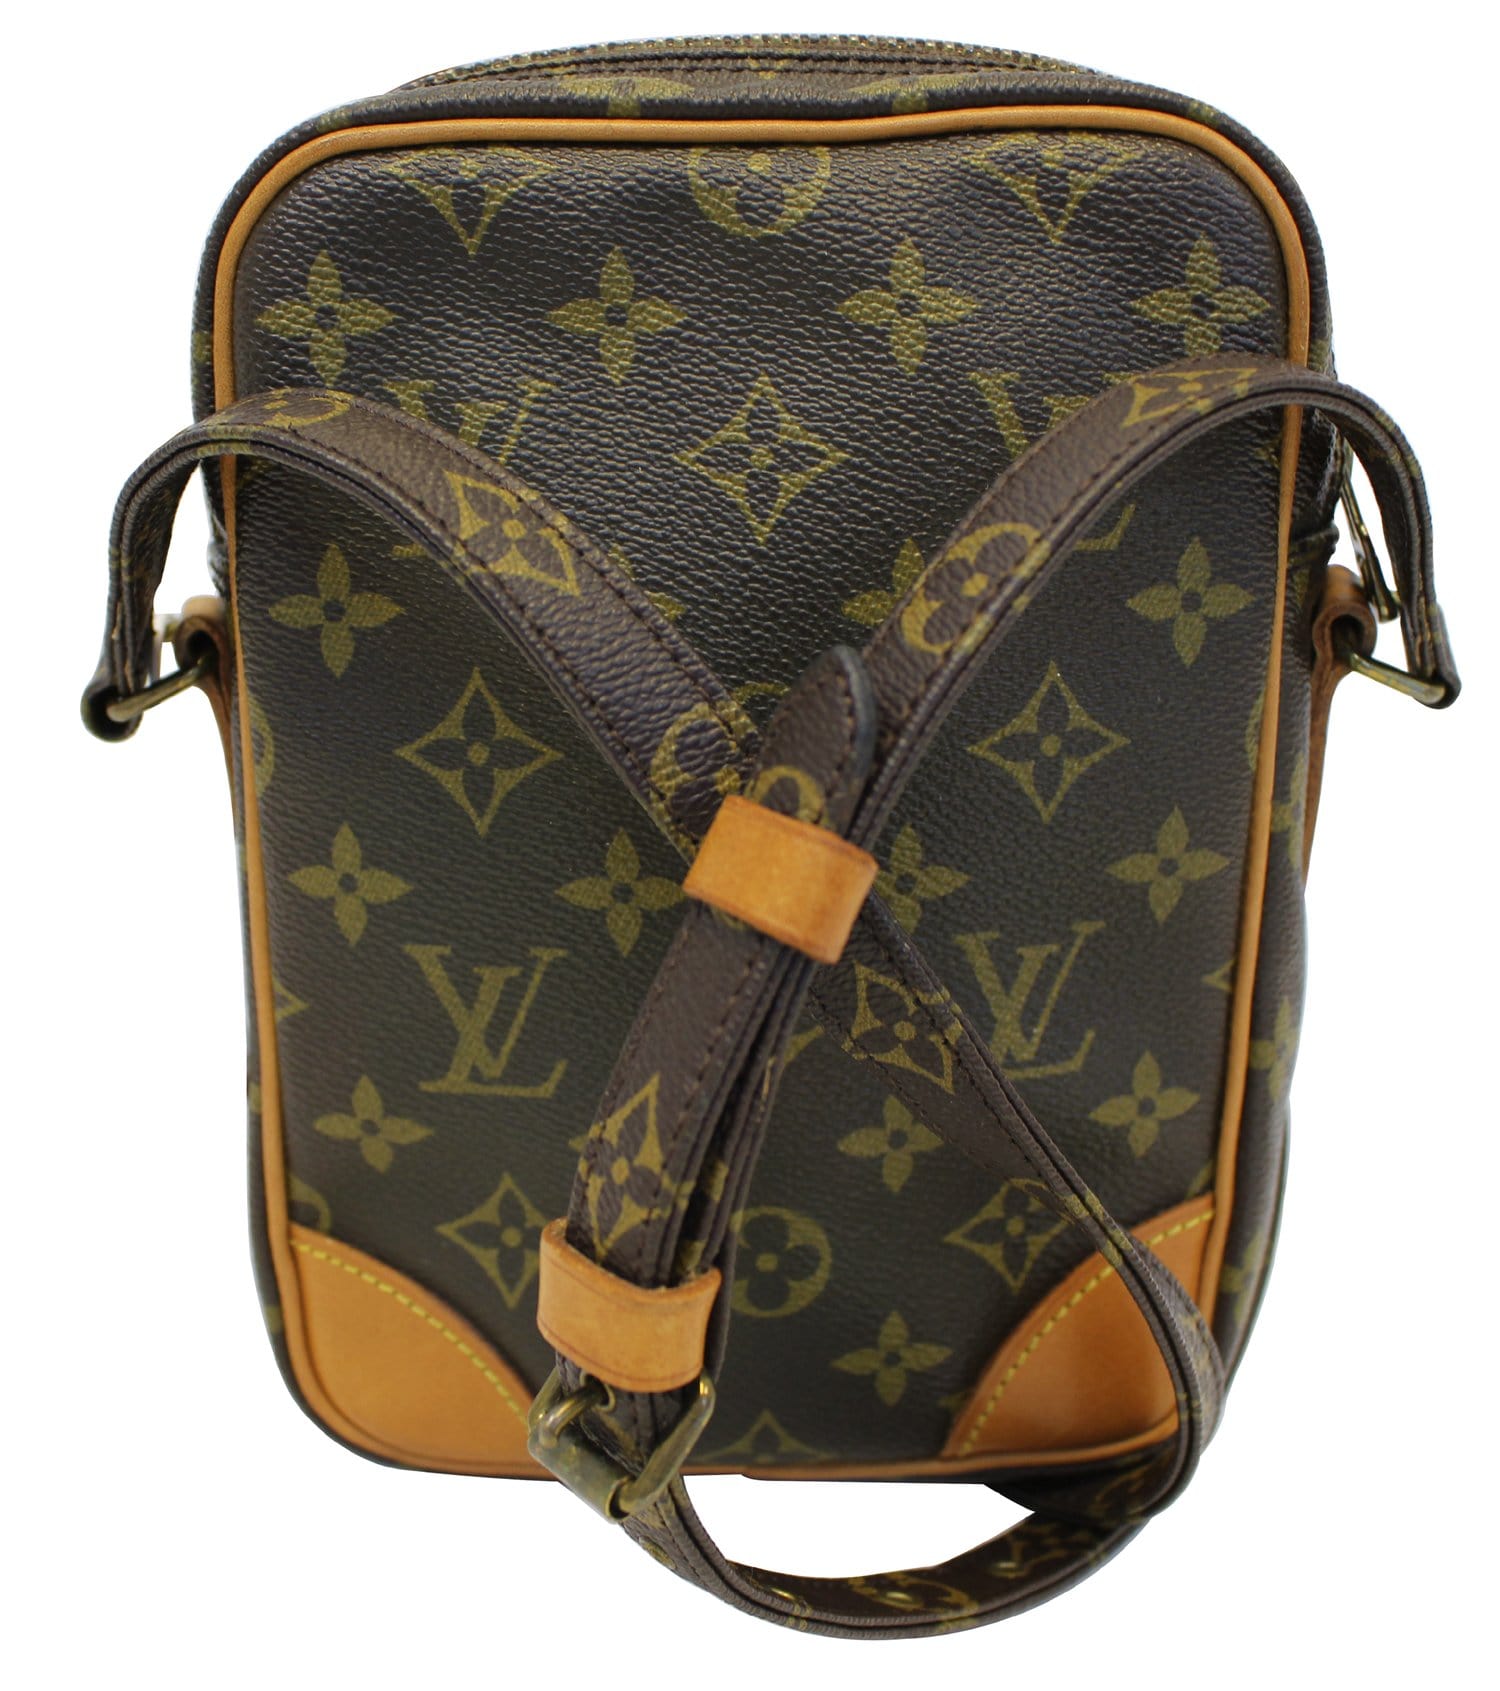 Louis Vuitton e Crossbody Bag in Monogram Canvas